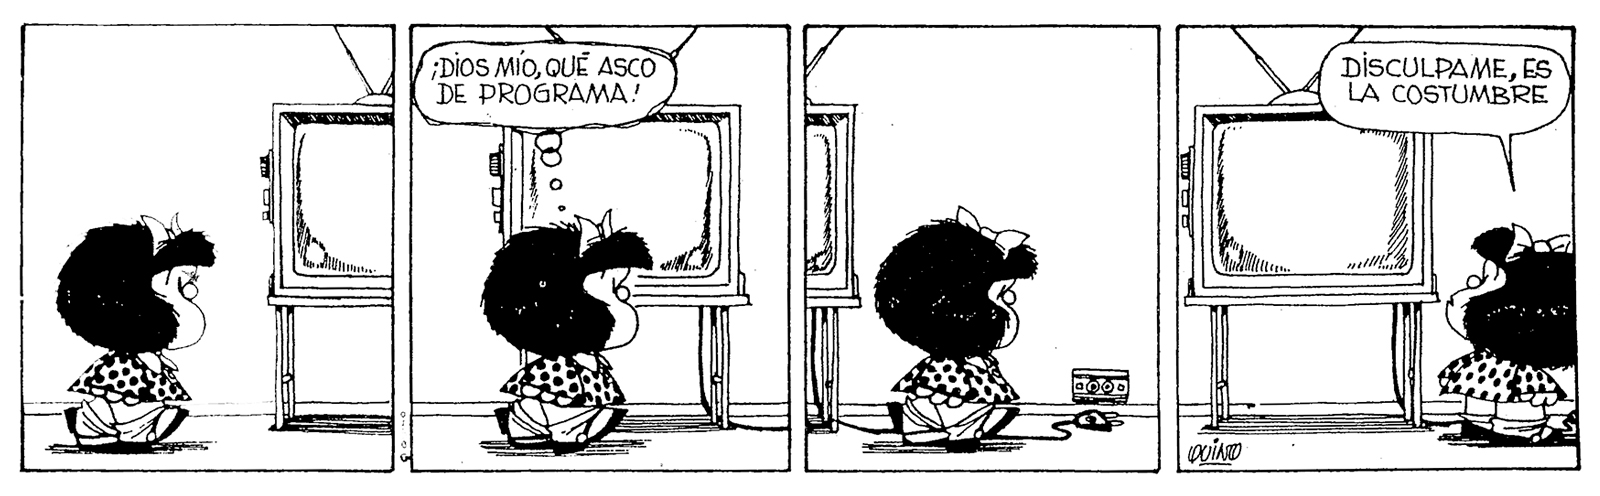 mafalda television 2 - Los niños menores de tres años no deberían ver la televisión